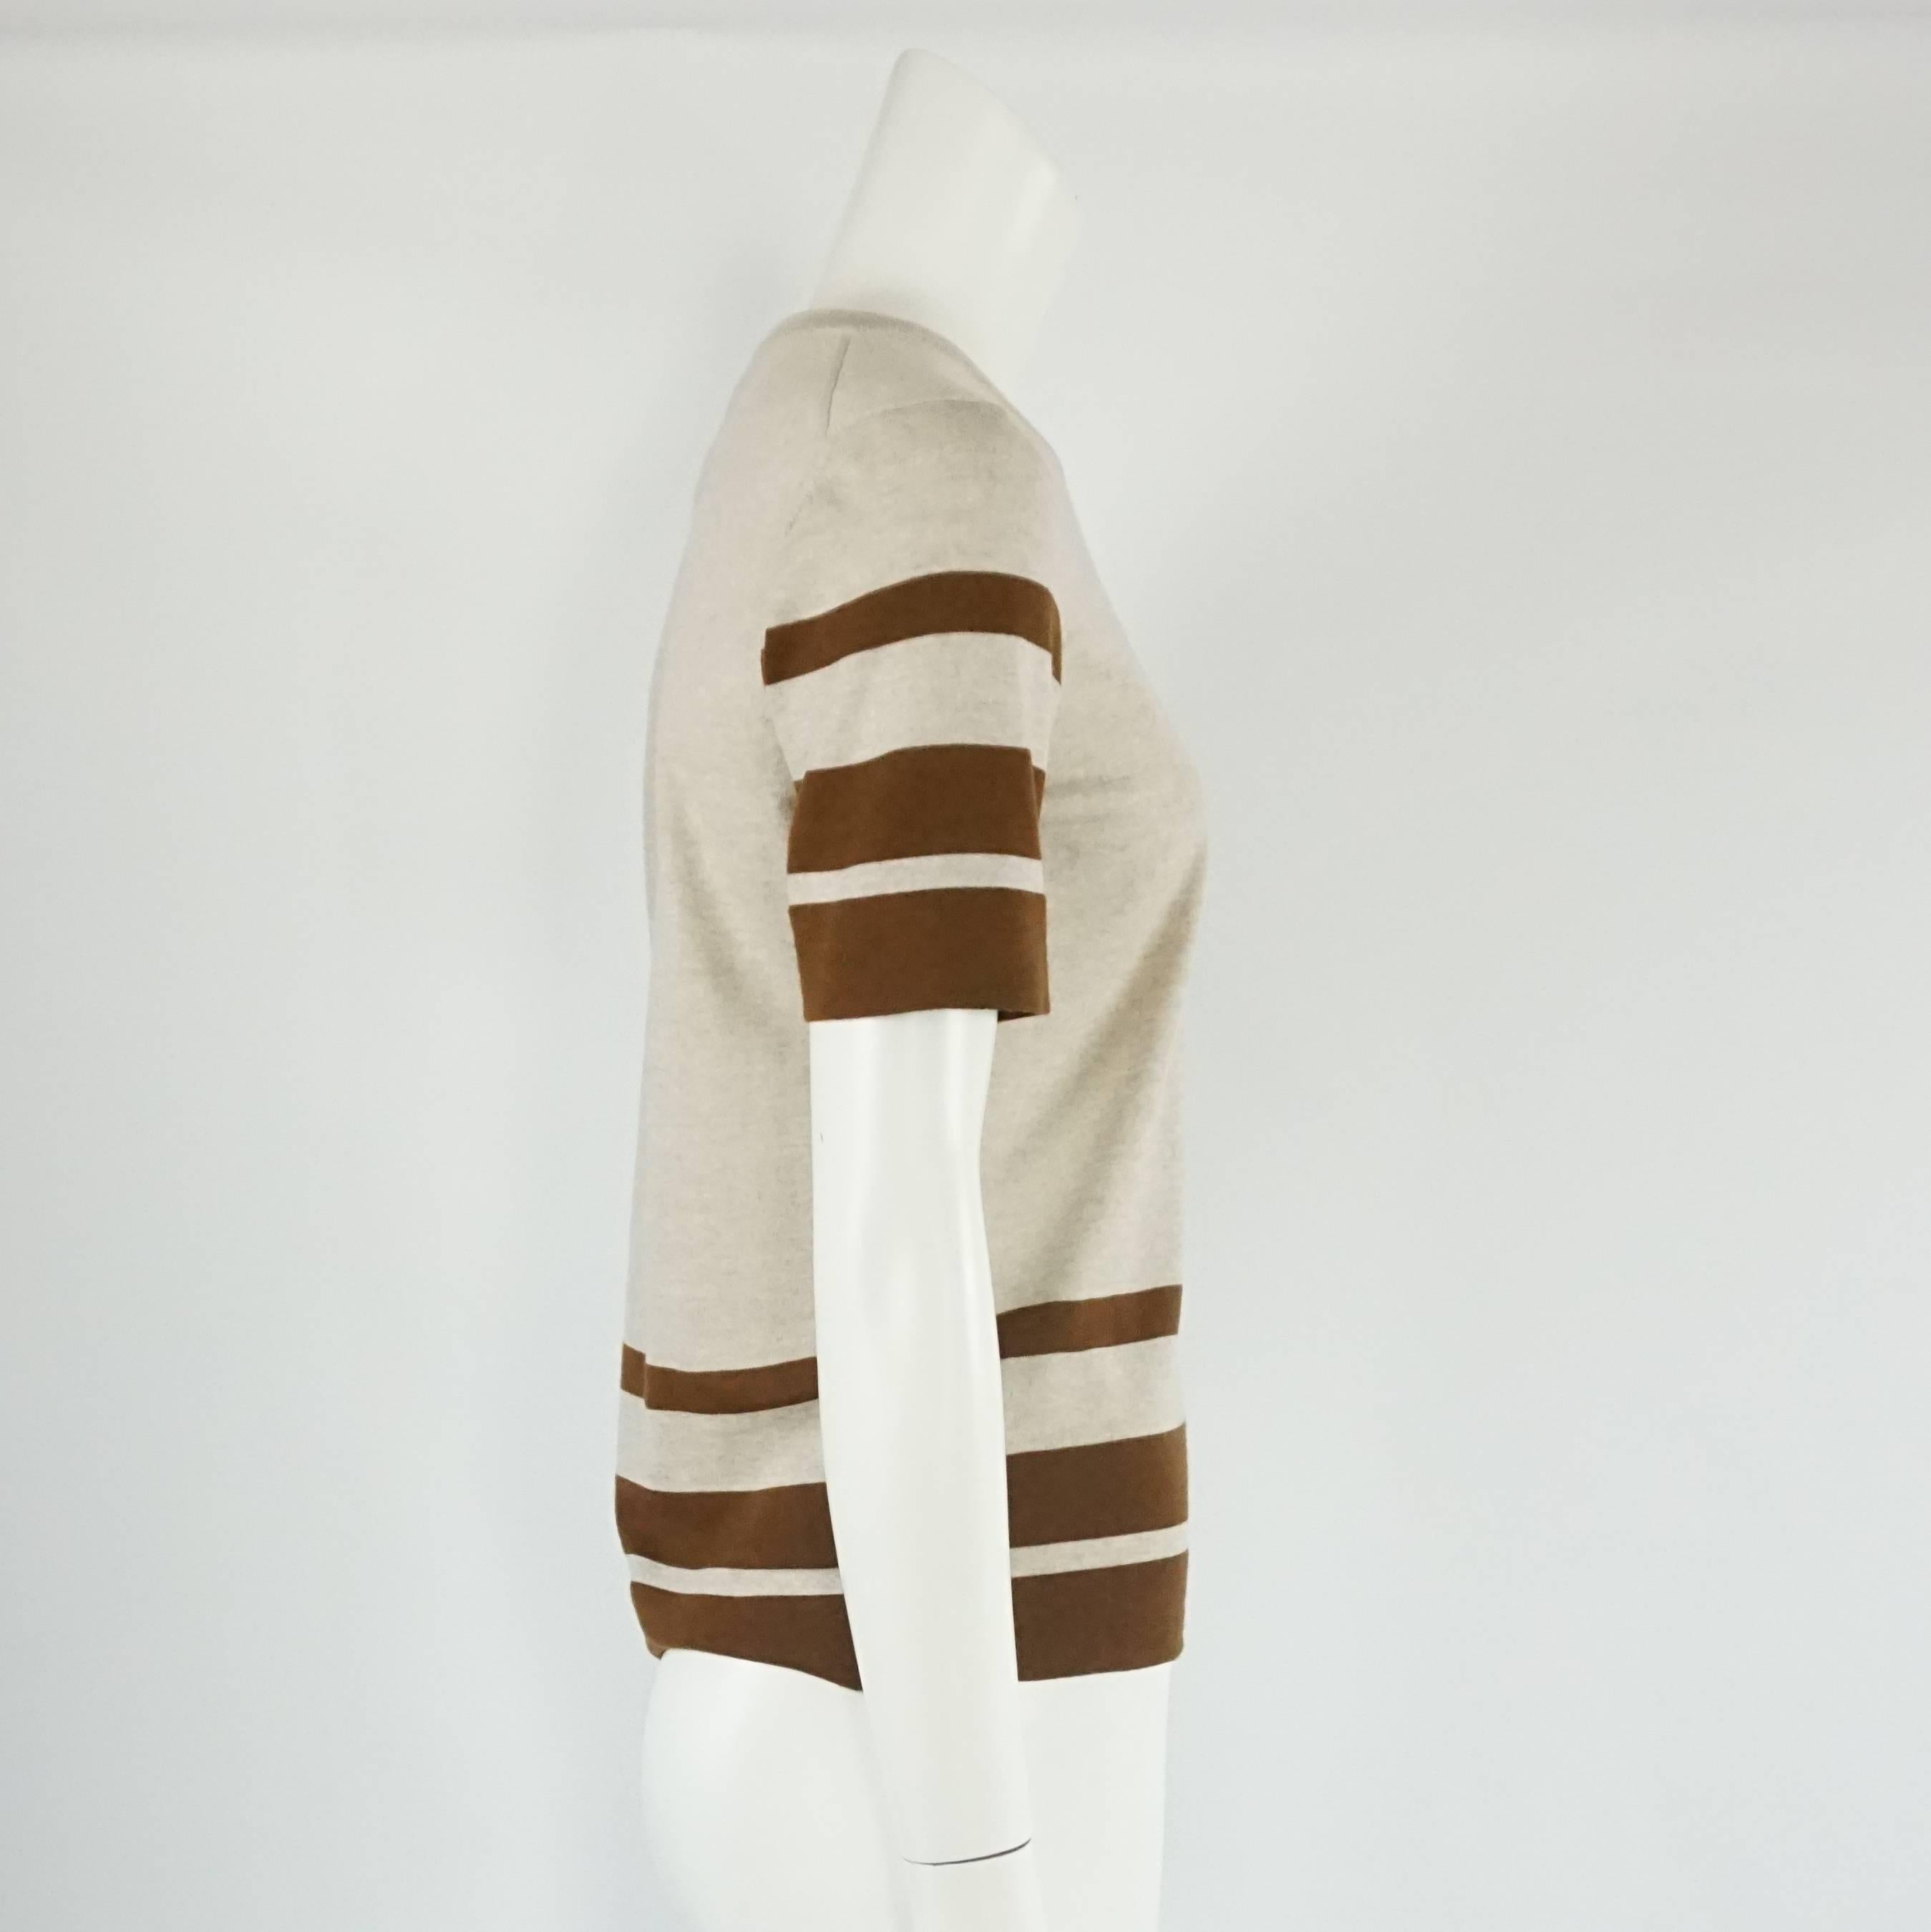 Ce top en laine vierge grise et marron de Salvatore Ferragamo présente un aspect classique et équestre. La blouse est à col rond et présente des rayures sur les manches et le bas, ainsi qu'un petit logo métallique Ferragamo sur le bas. La pièce est